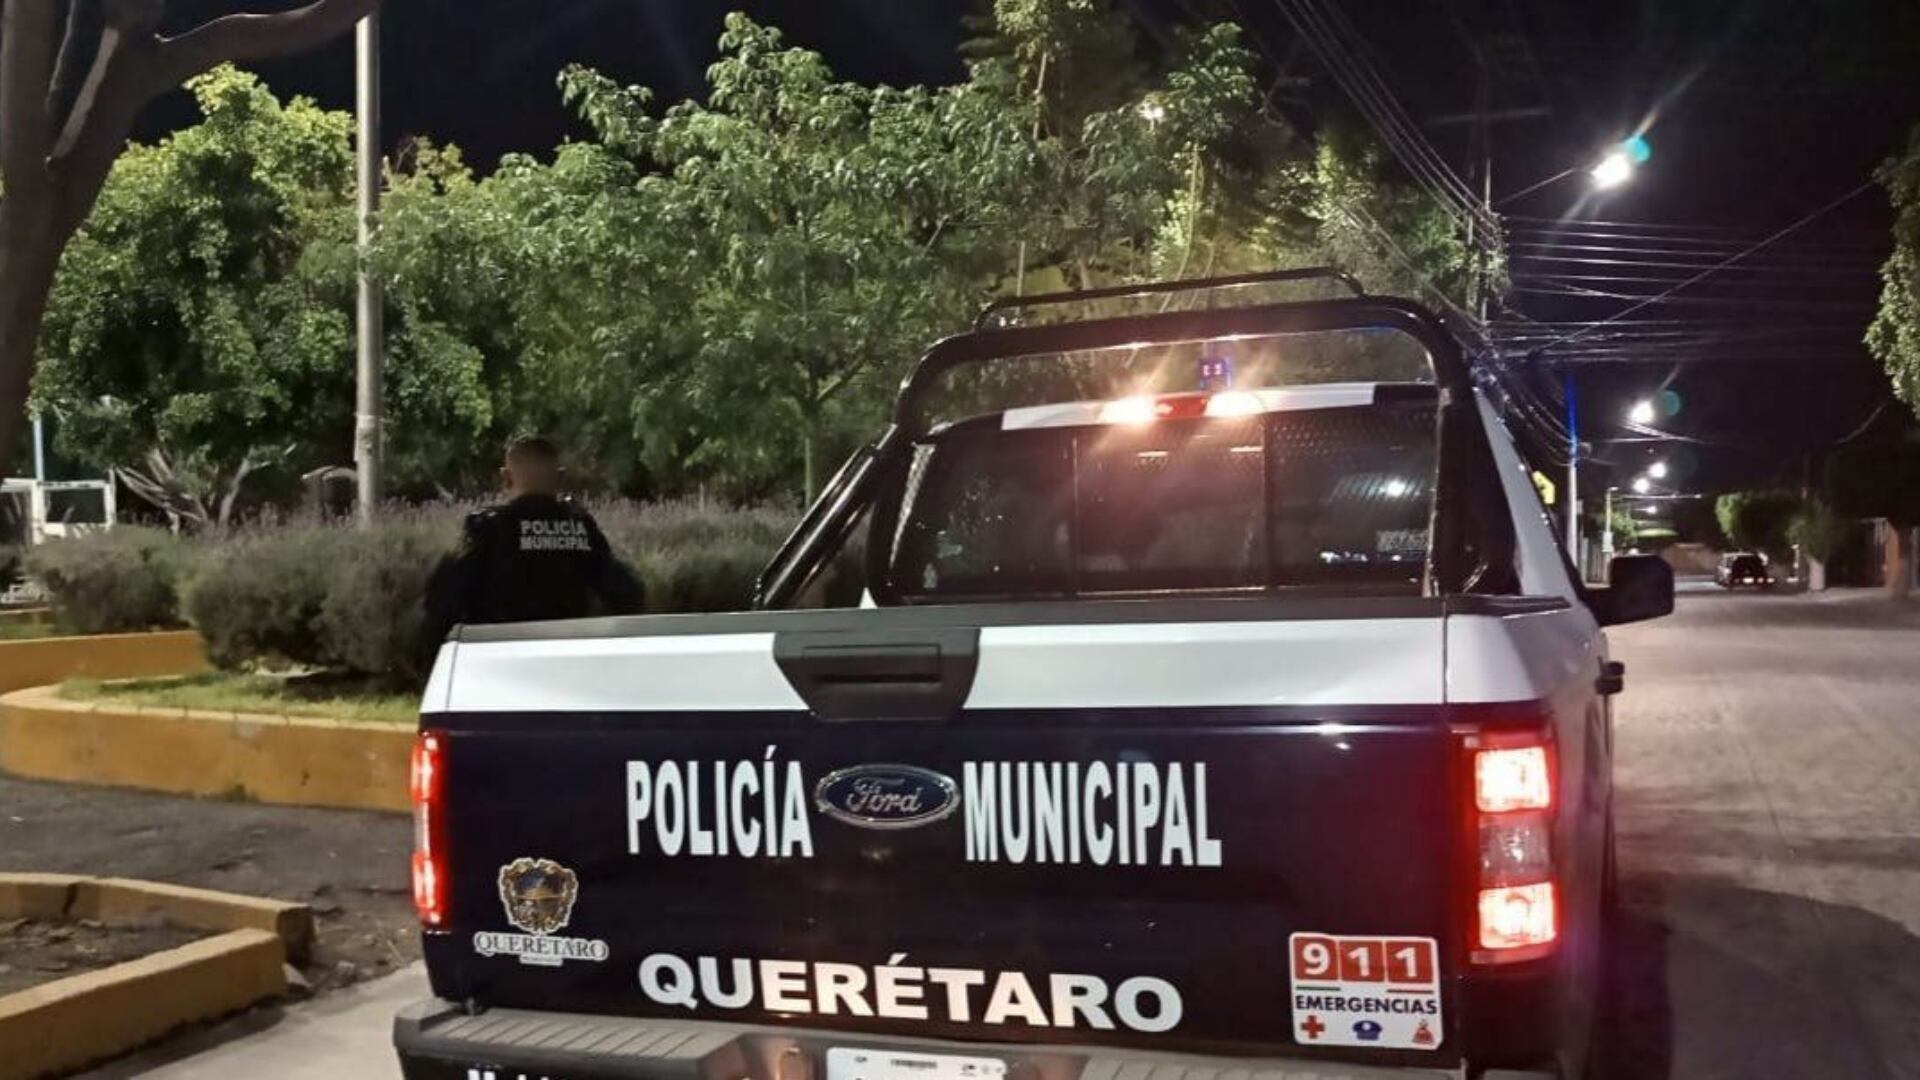 Policía Municipal Querétaro